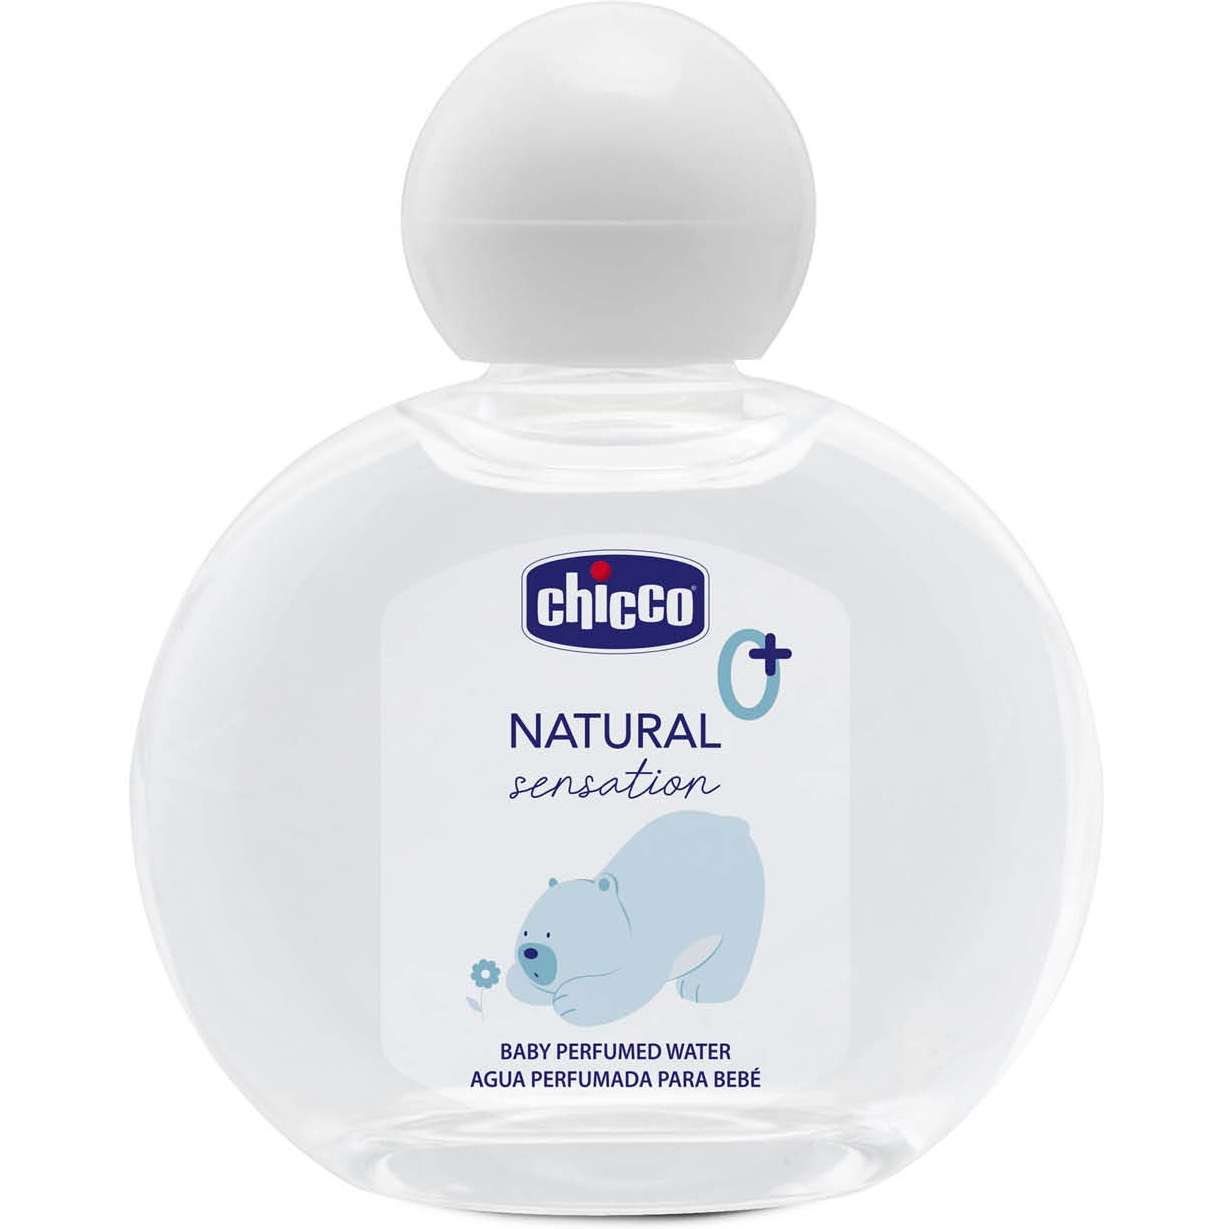 Дитяча парфумована вода Chicco Natural Sensation Baby Perfumed Water 100 мл (11523.00) - фото 1